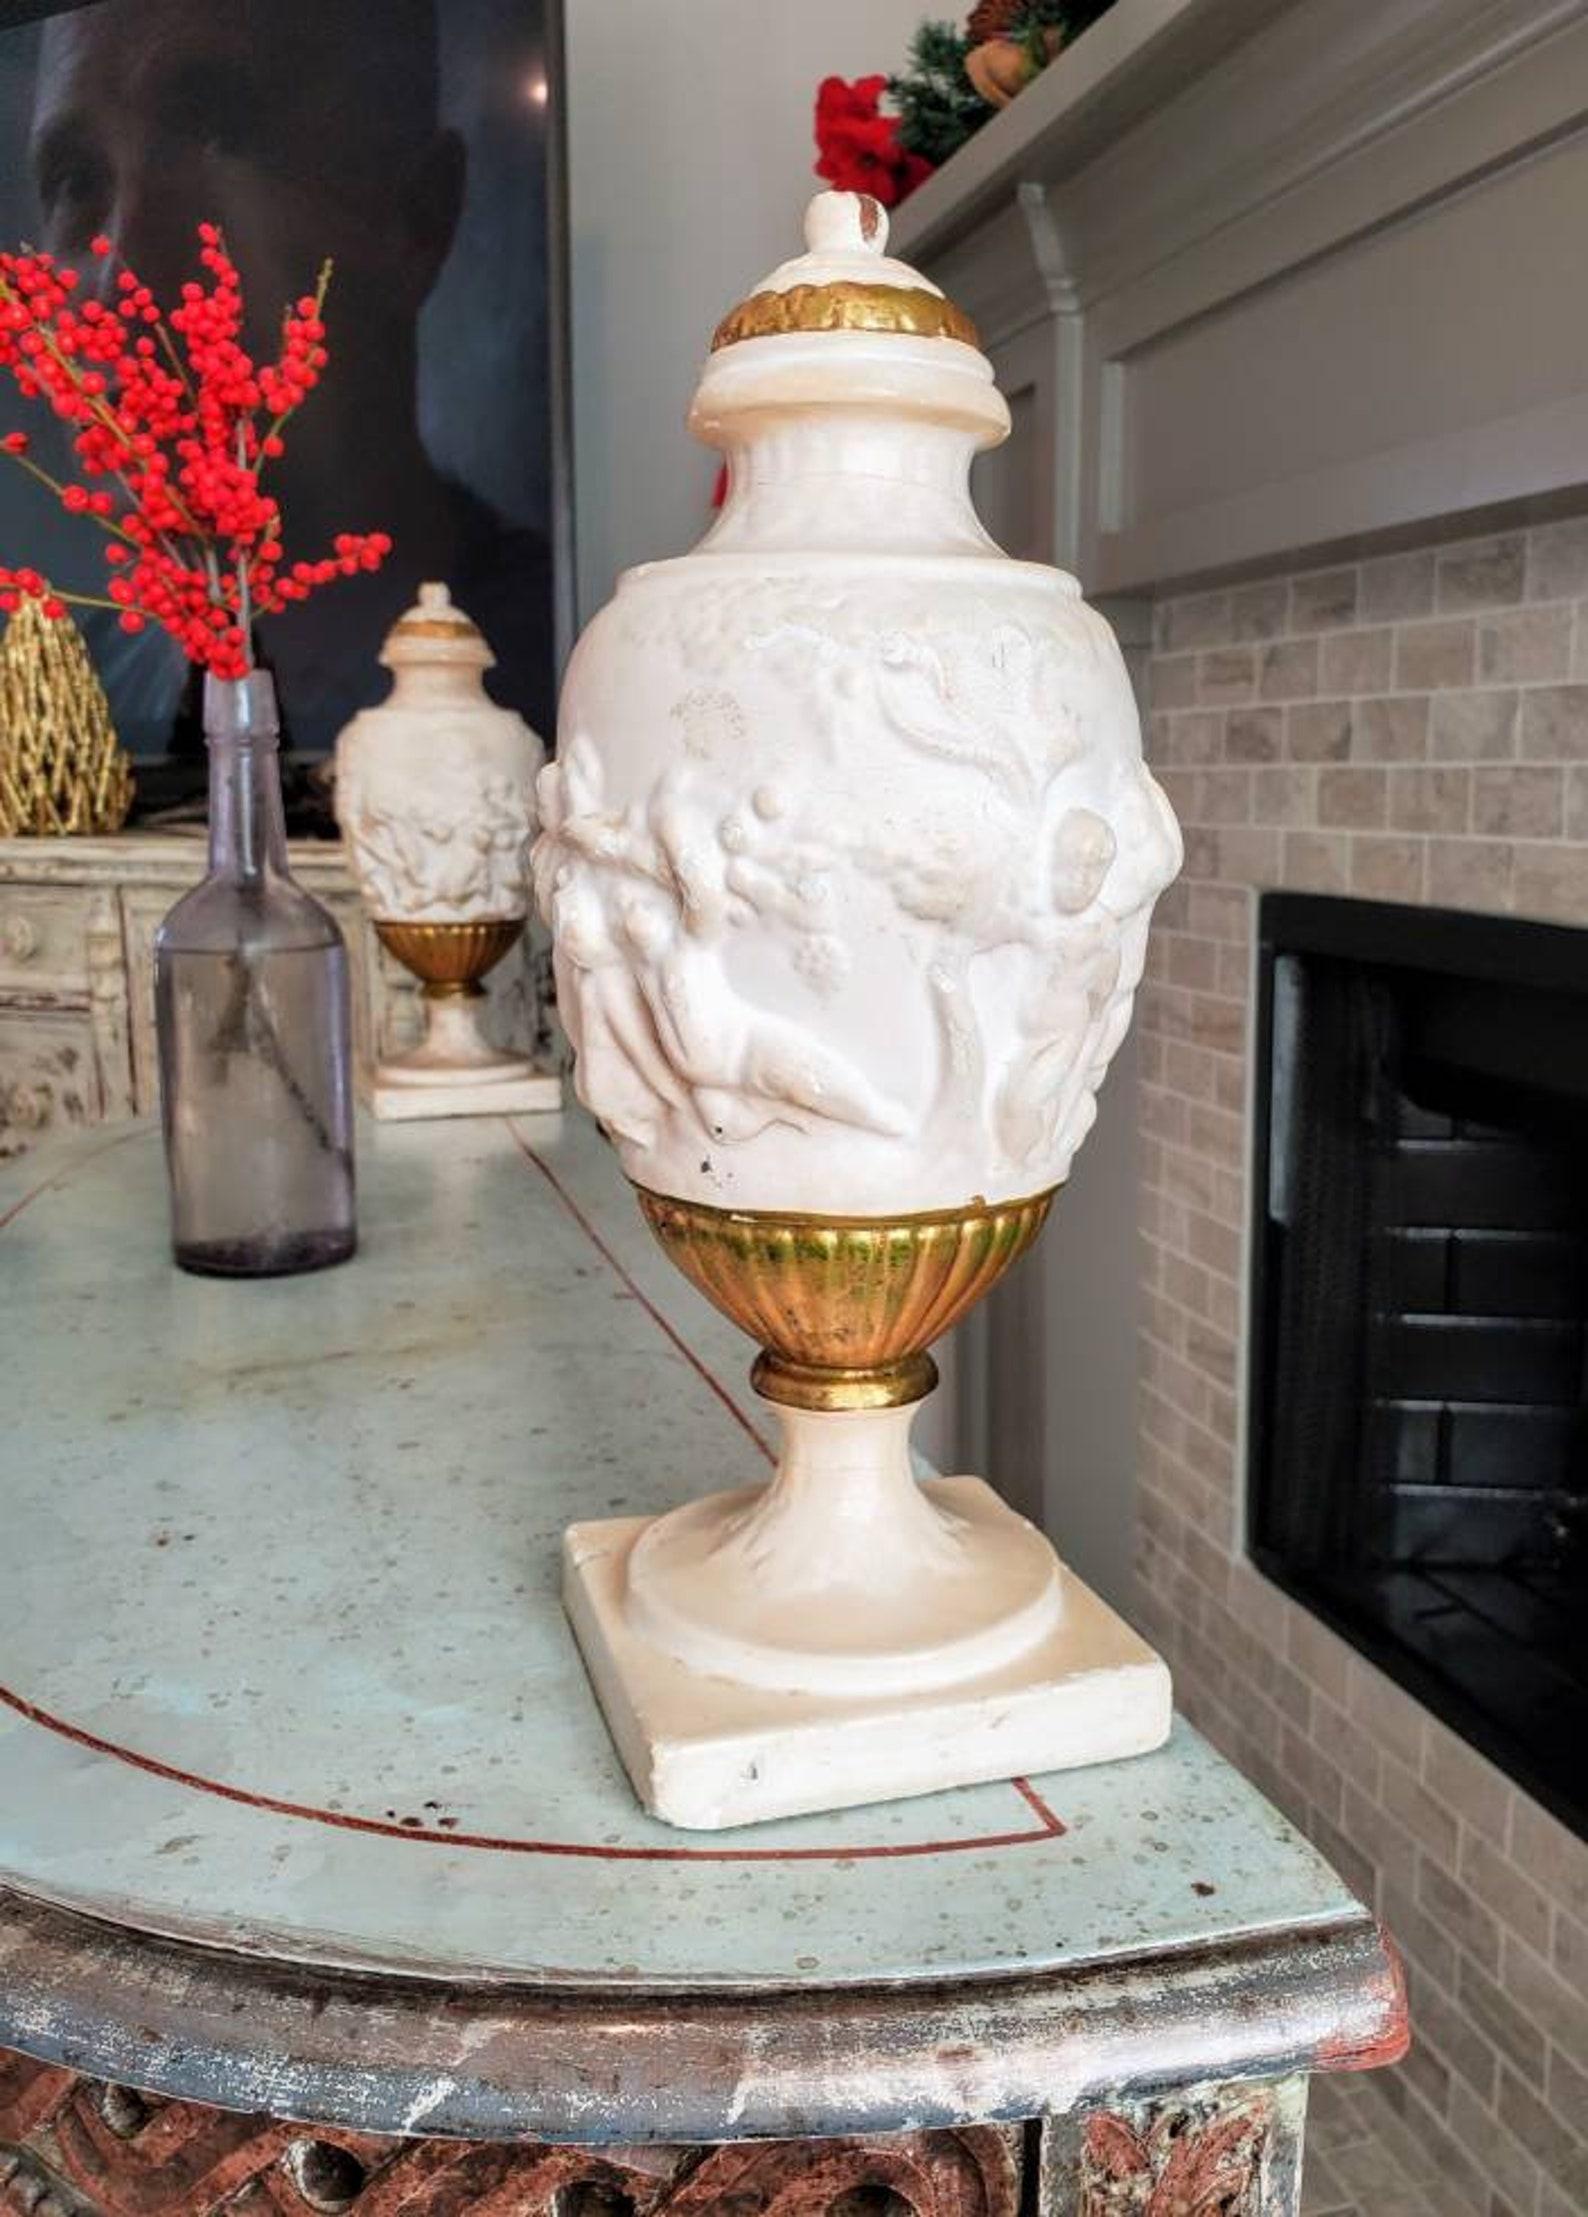 Une superbe paire d'urnes en bois en faux marbre de style néoclassique italien.

Née en Italie vers le XVIIIe siècle ou le début du XIXe siècle, cette urne sculpturale à couvercle de forme architecturale est sculptée à la main à partir d'un seul